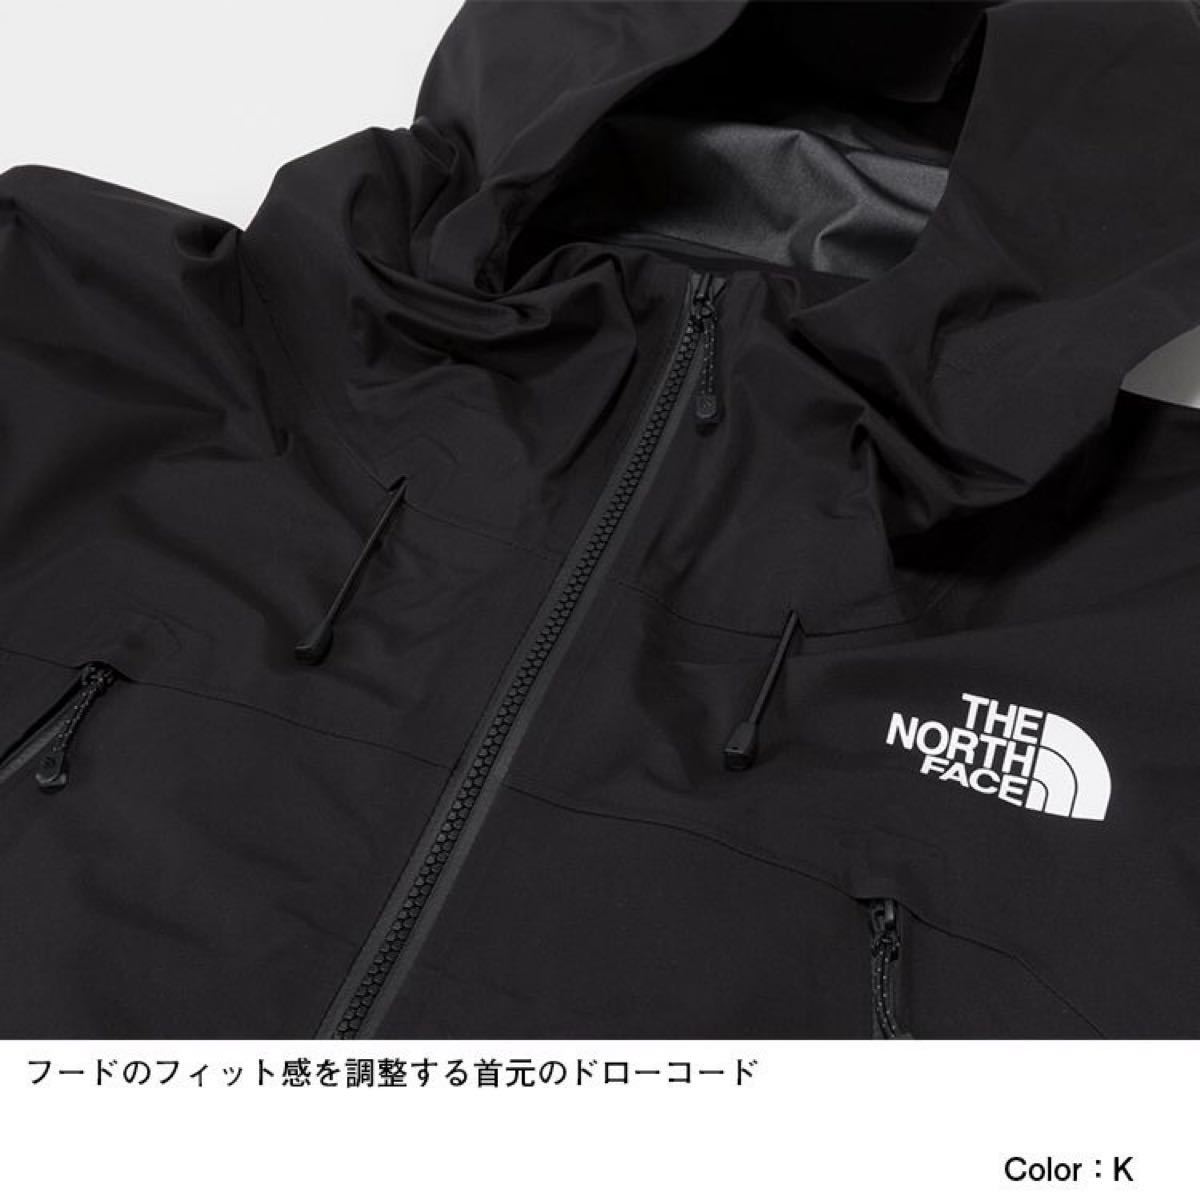 THE NORTH FACE ザノースフェイス 防水レインジャケット FLスーパーヘイズジャケット ブラック(黄) メンズM 新品